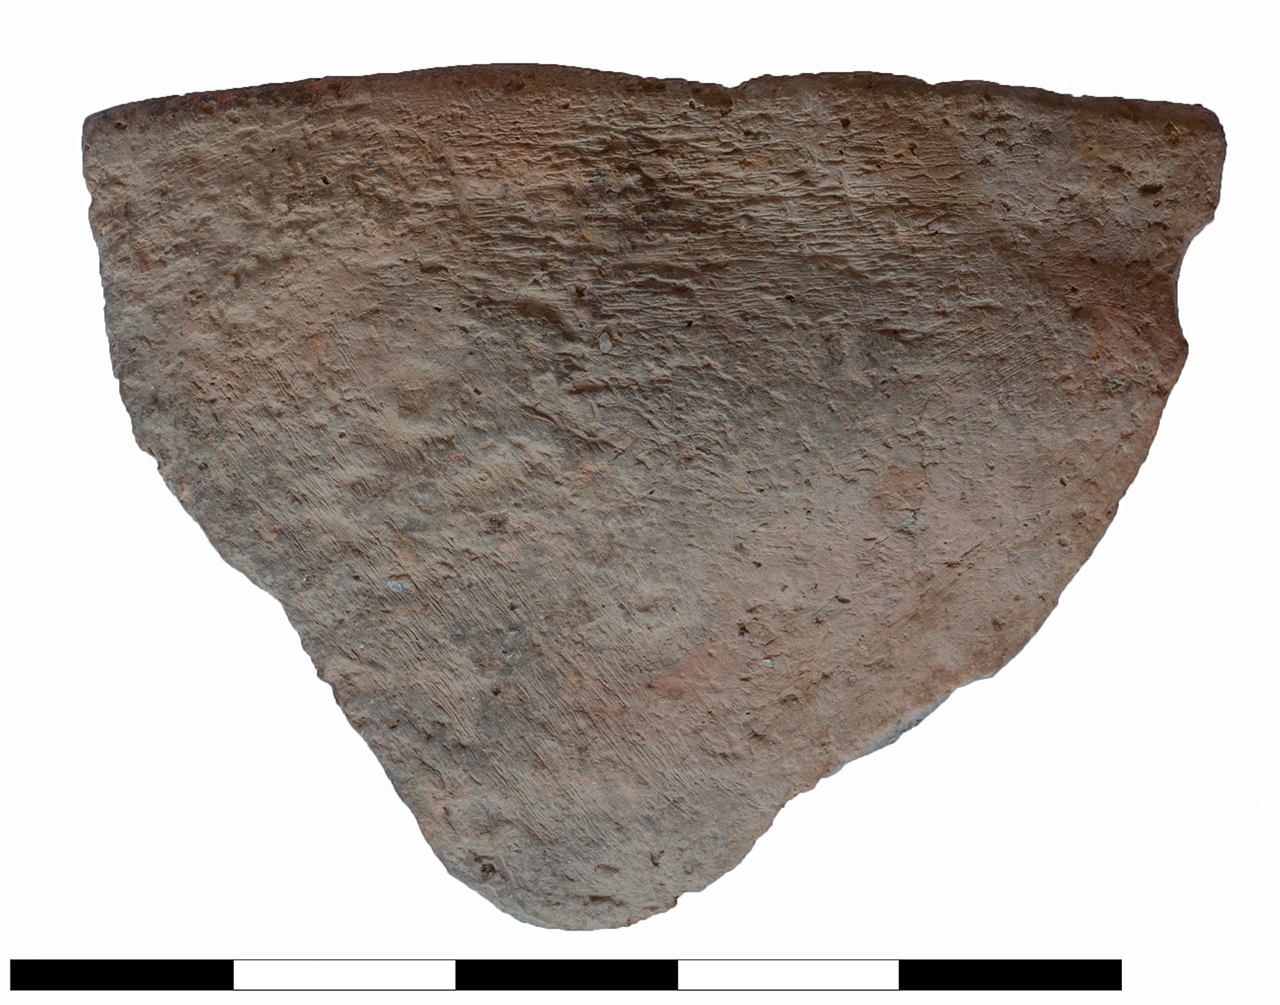 scodella/ troncoconica, orlo, parete (età del bronzo recente-finale)